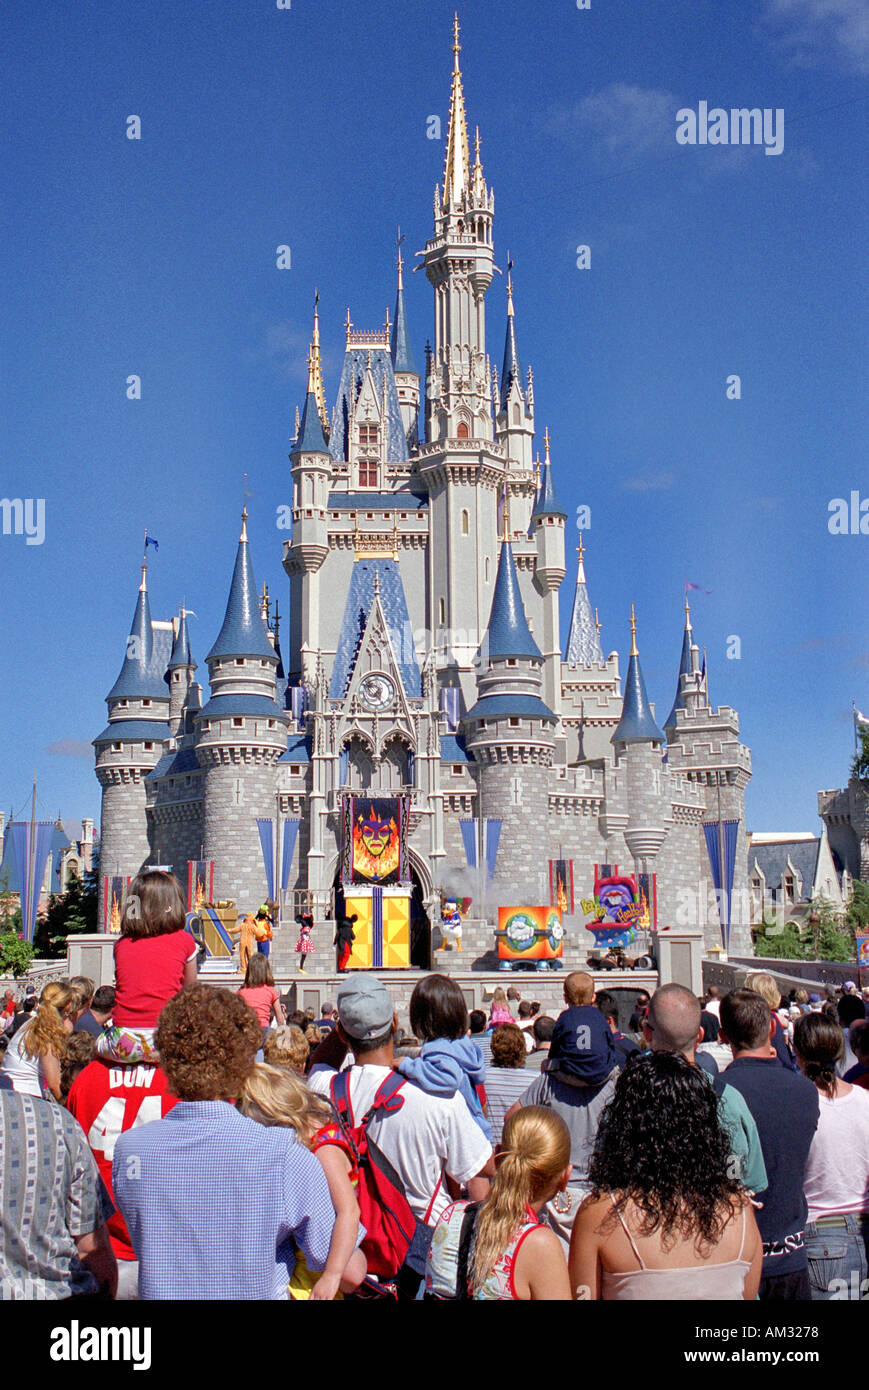 Castillo de Disney Magic Kingdom Disneyland de Orlando, Florida, EE.UU. Foto de stock